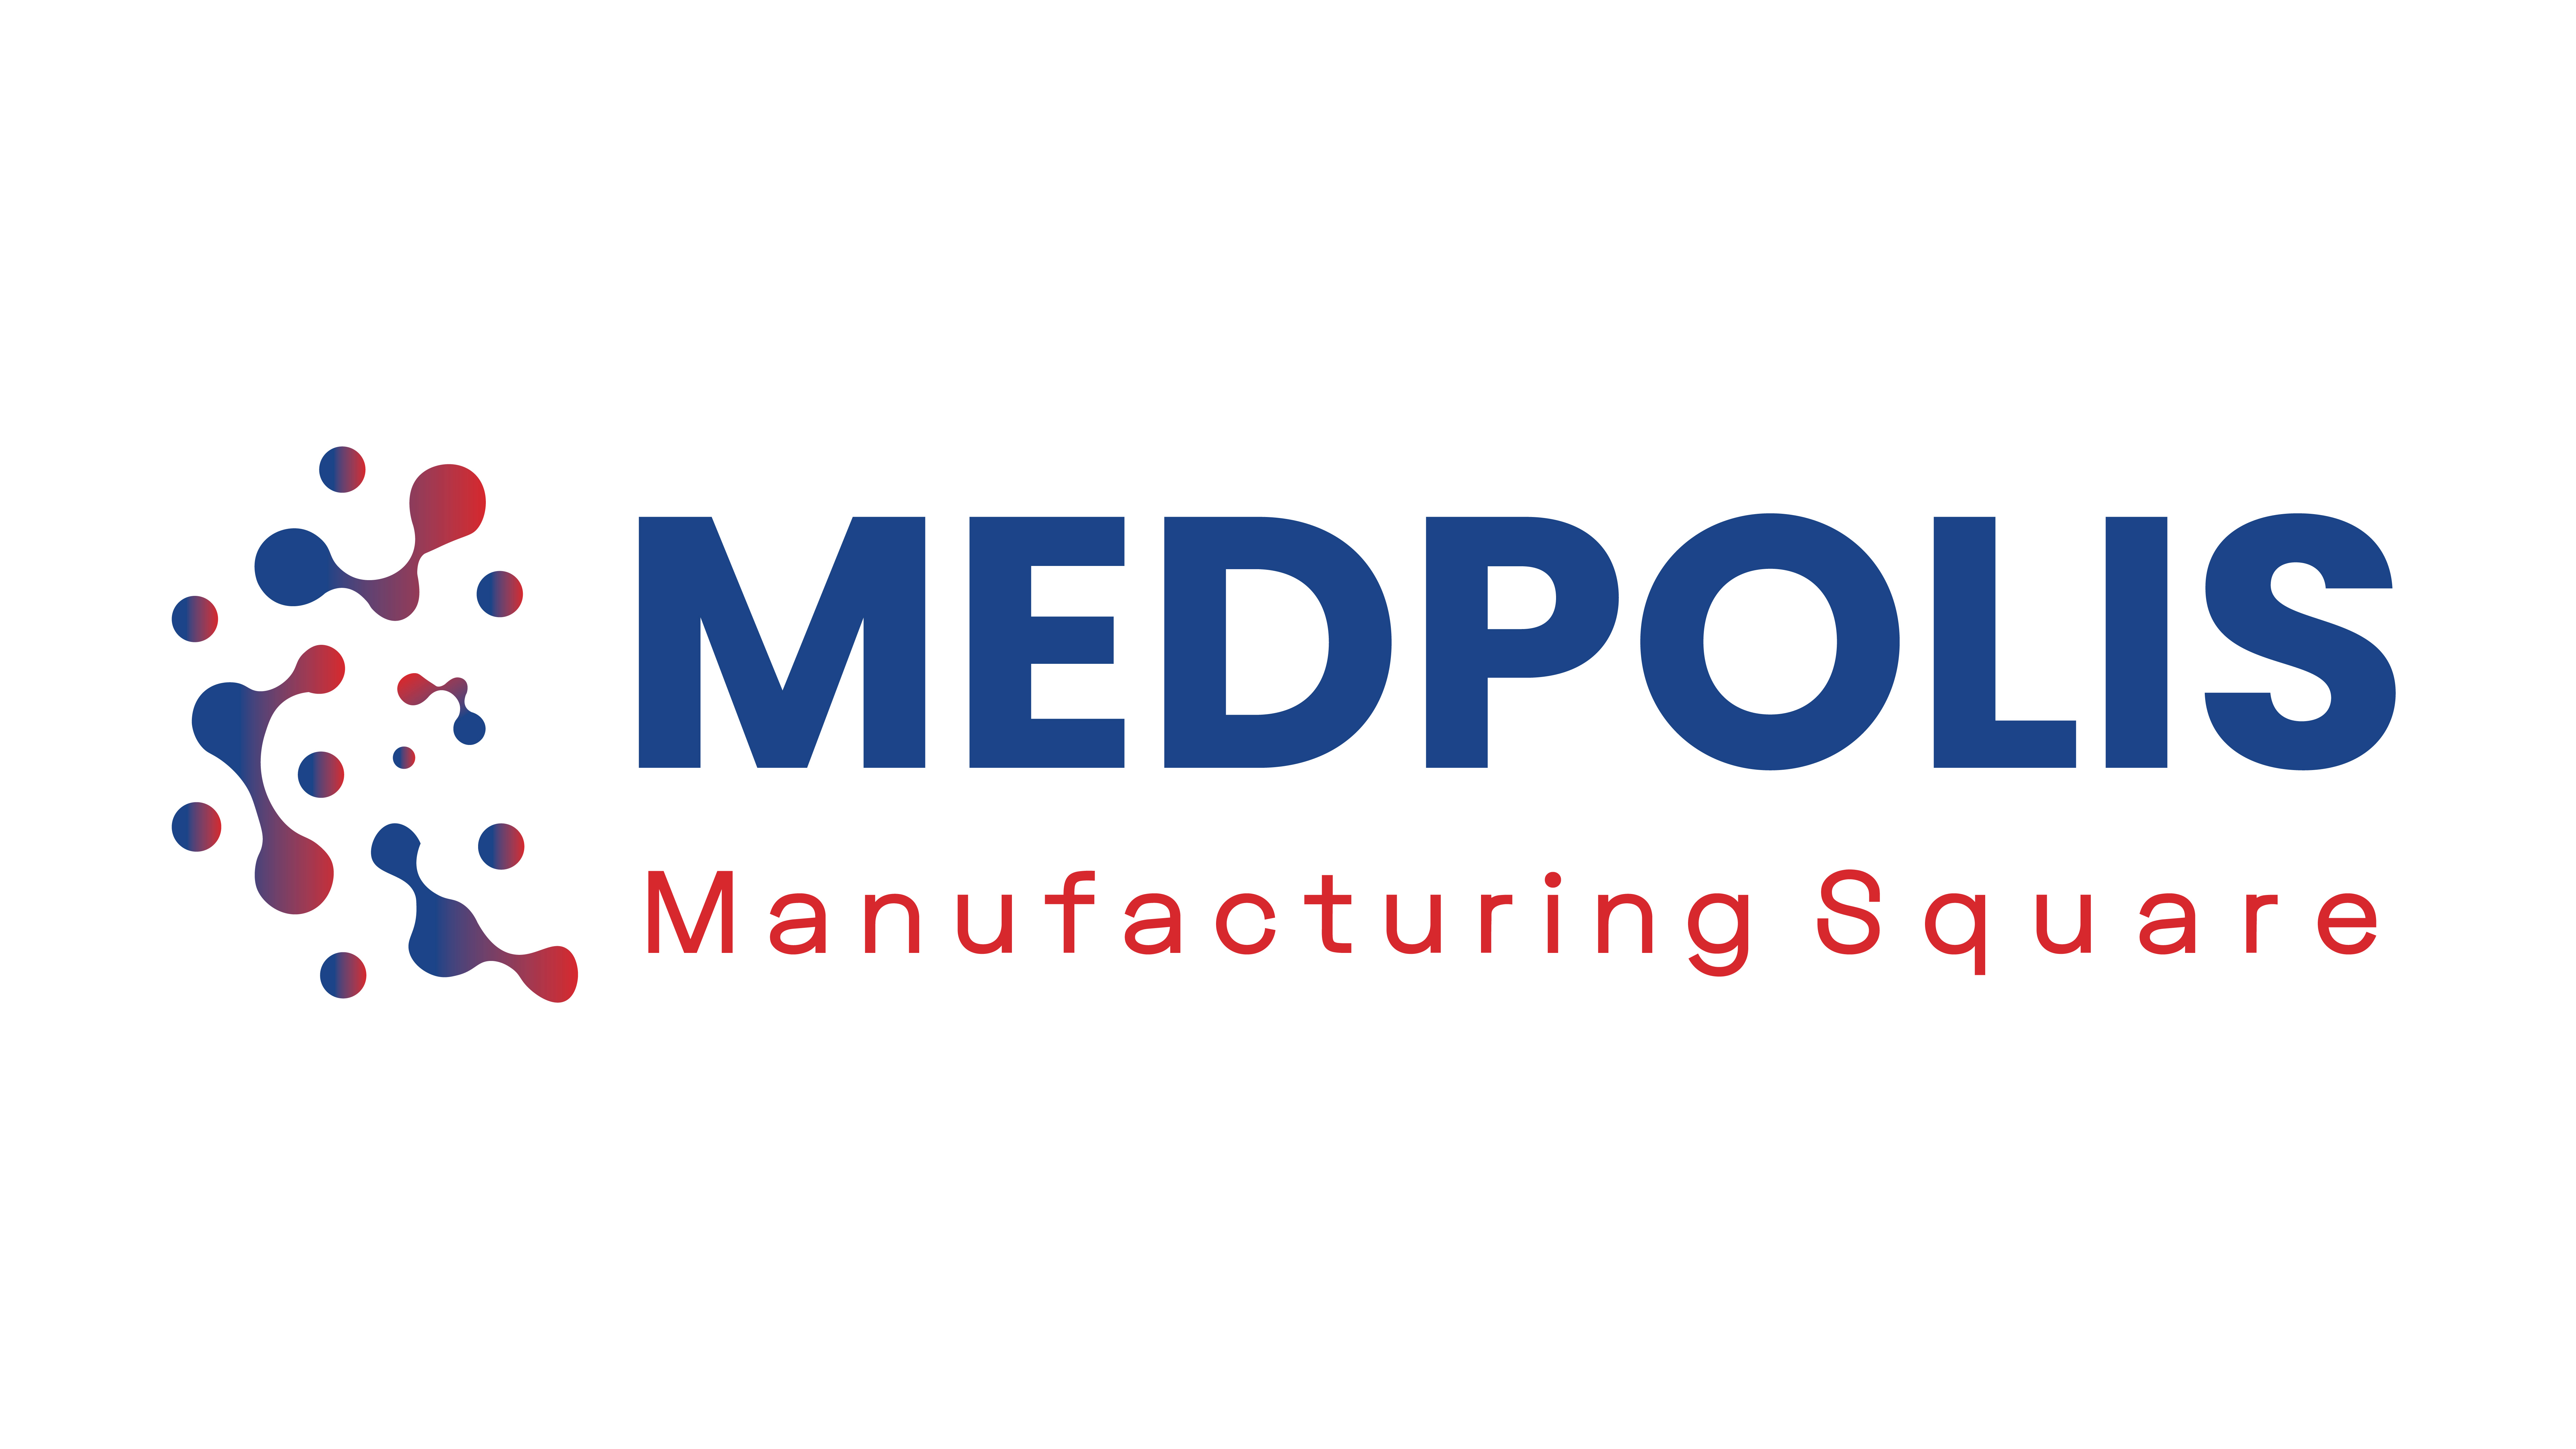 Medpolis 801 Manufacturing Square